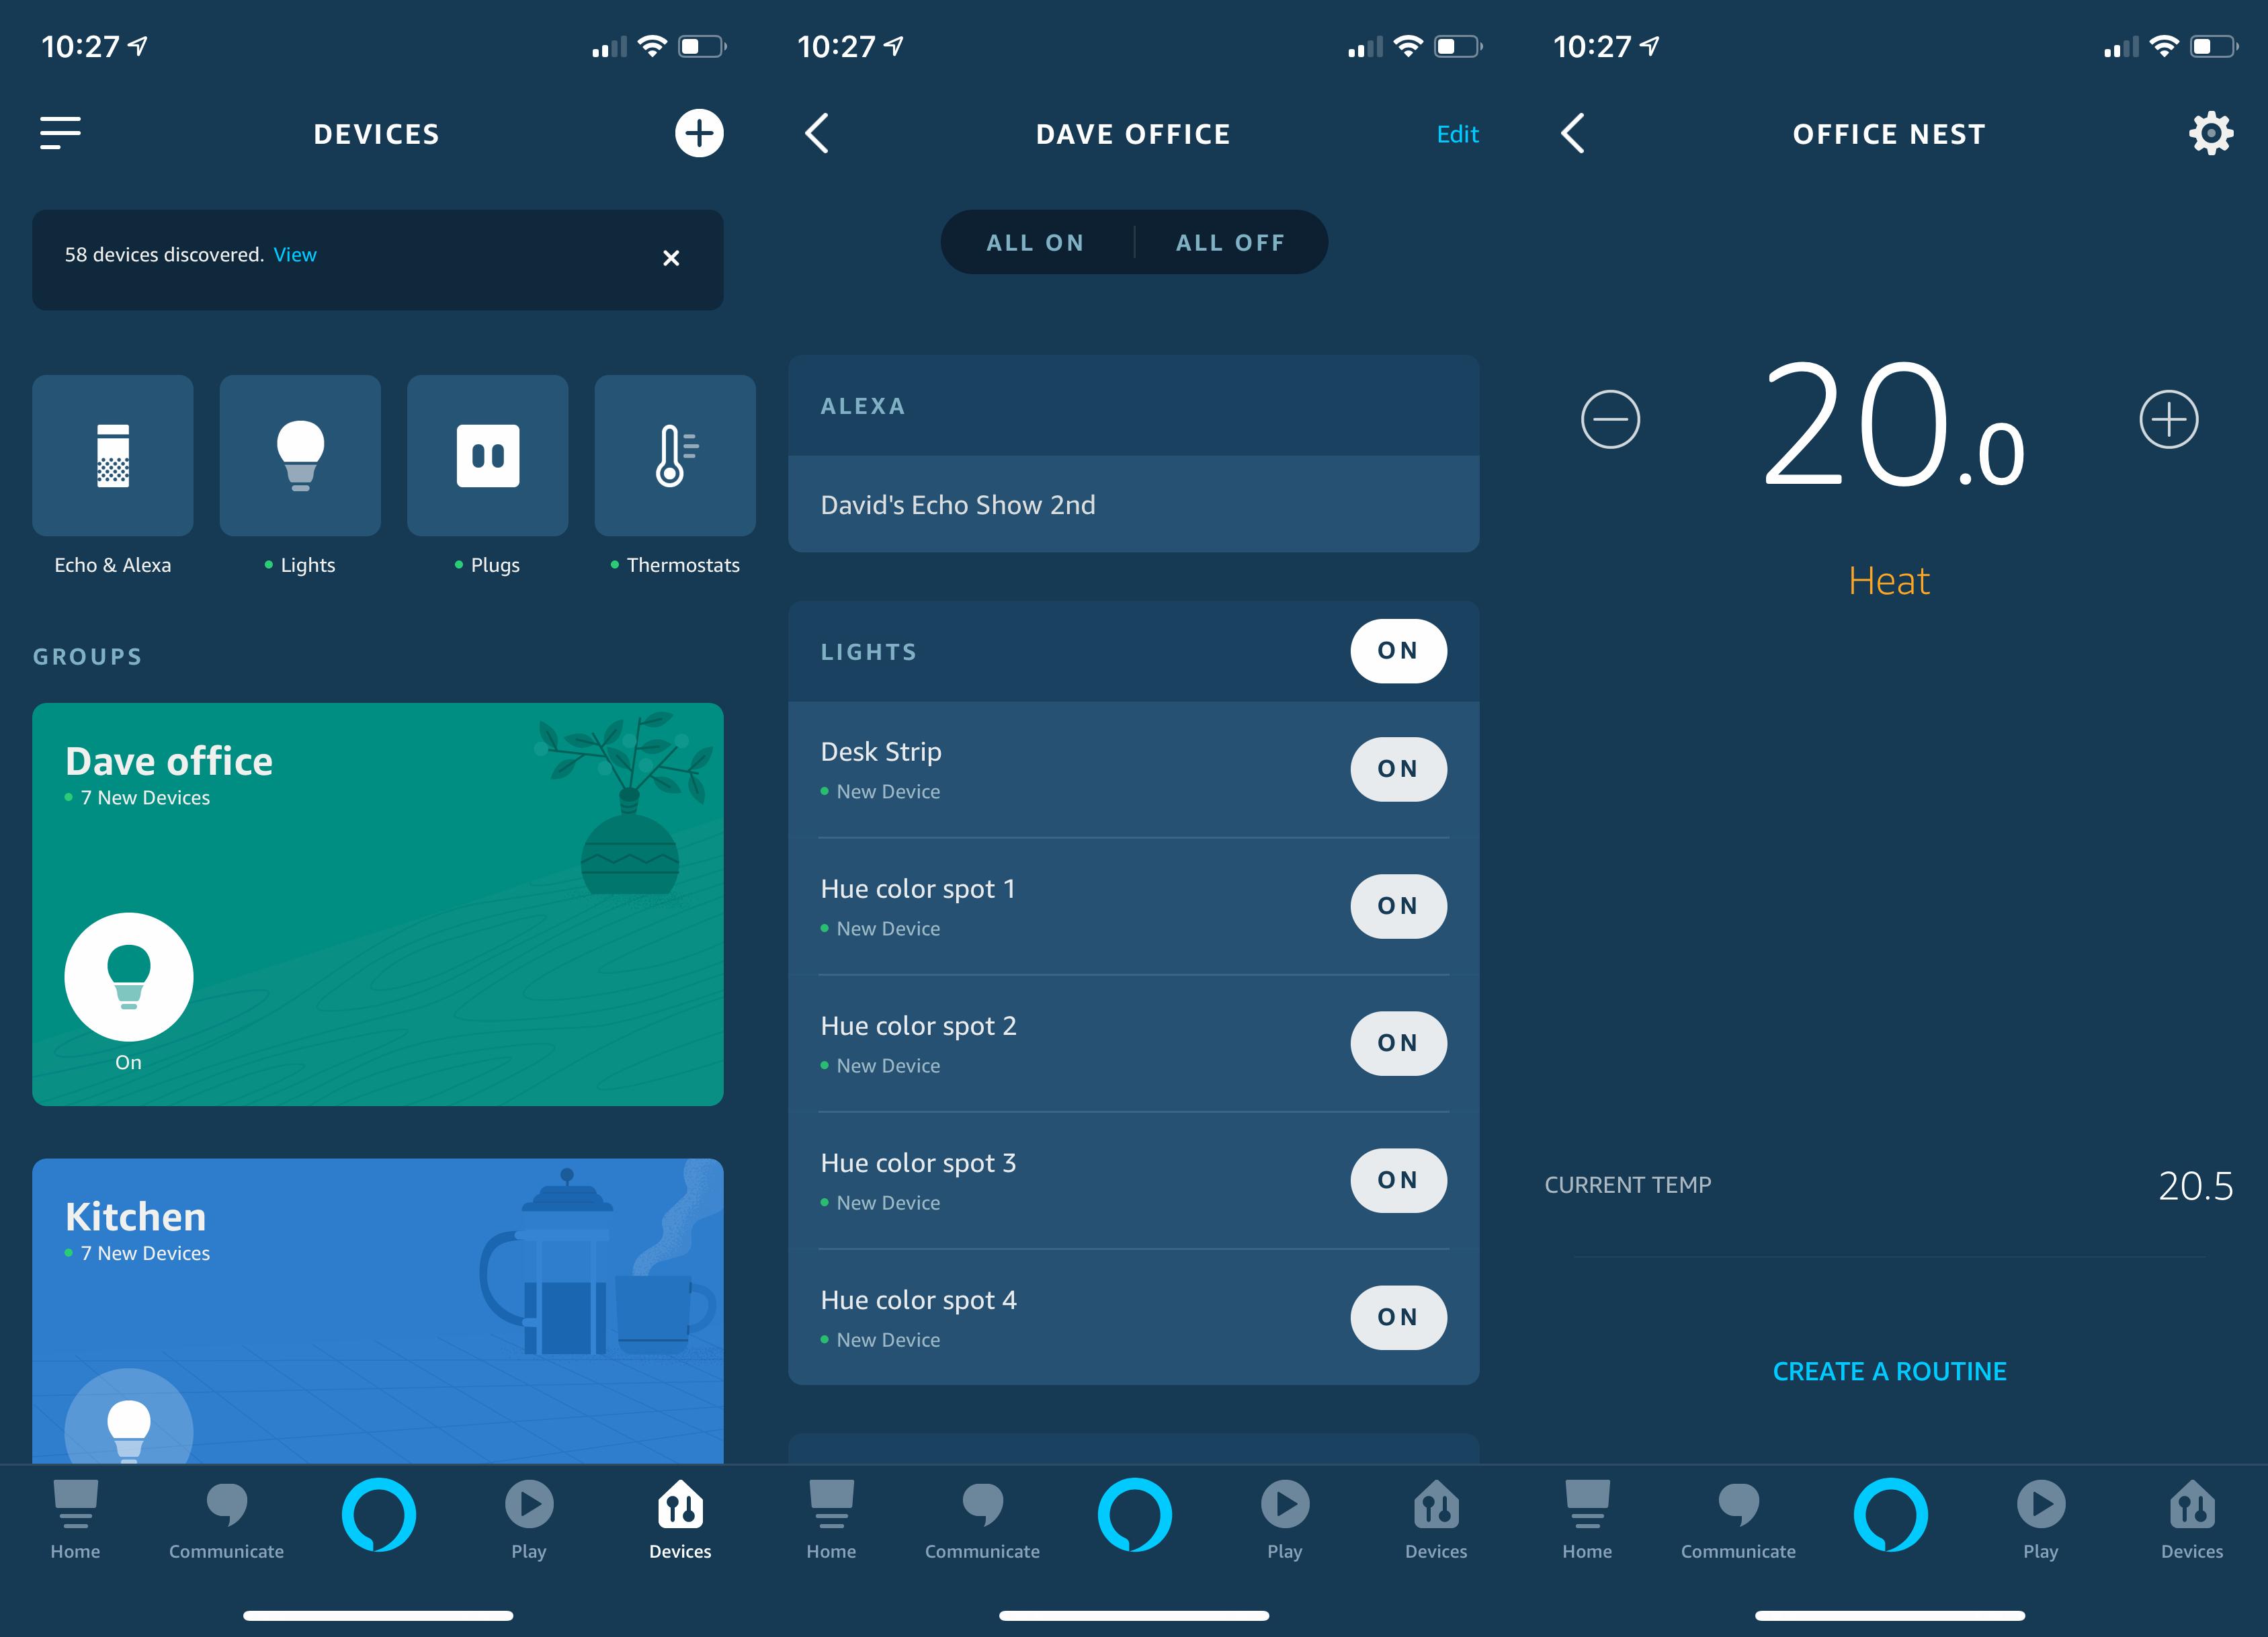 Amazon Alexa App control smart devices